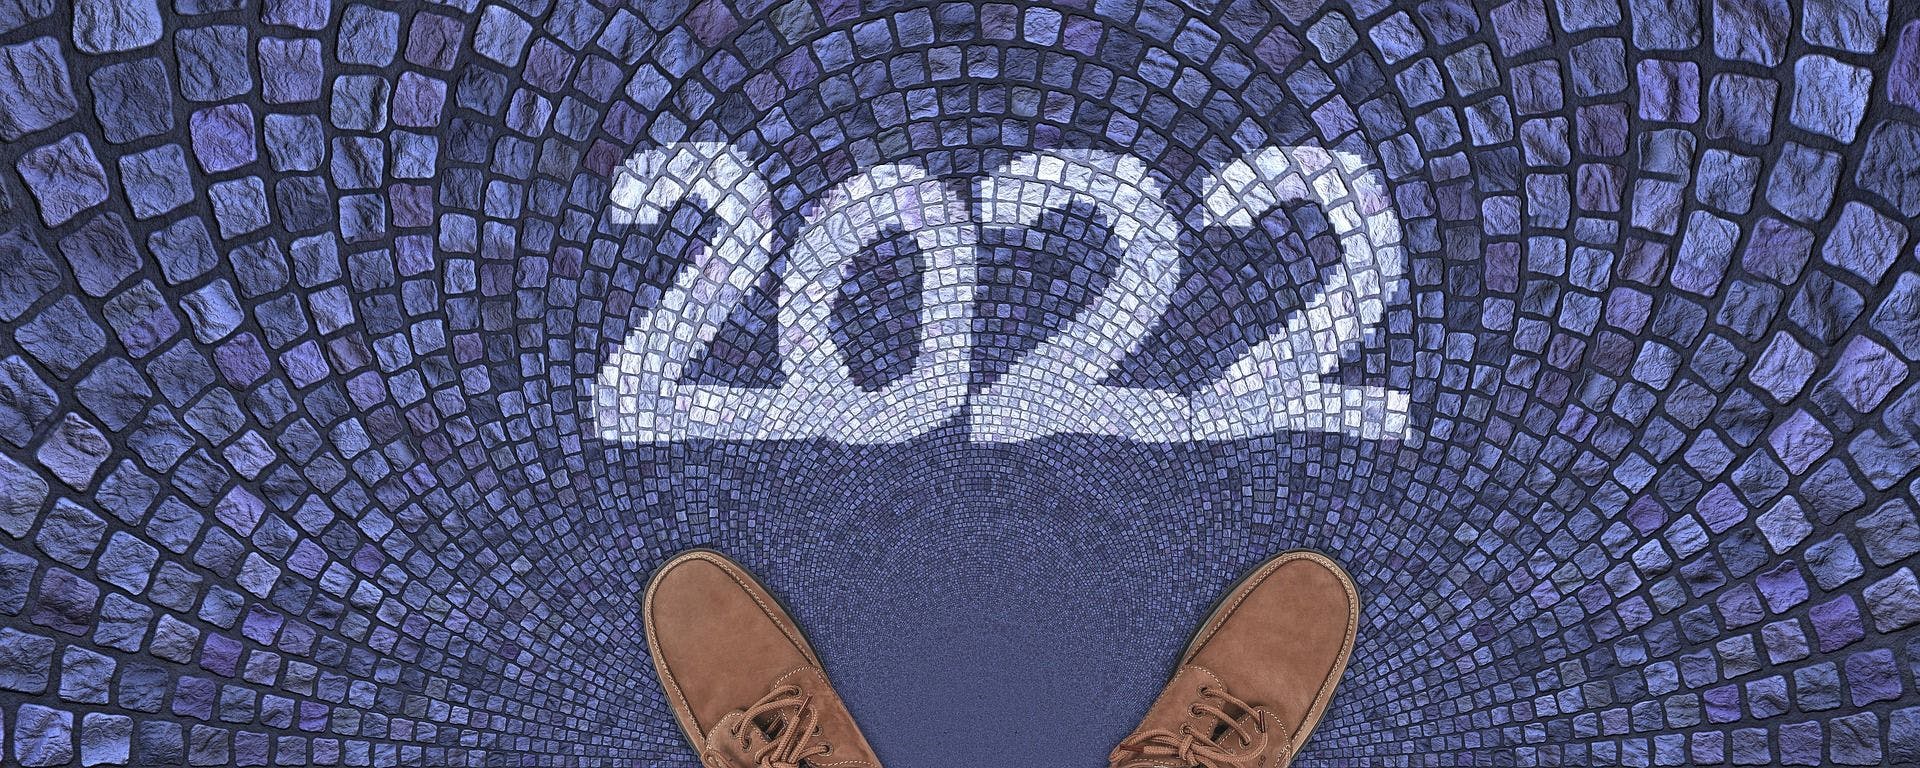  2022년 이슈가 많았던 기업들, 현재는 어떨까? 썸네일 이미지